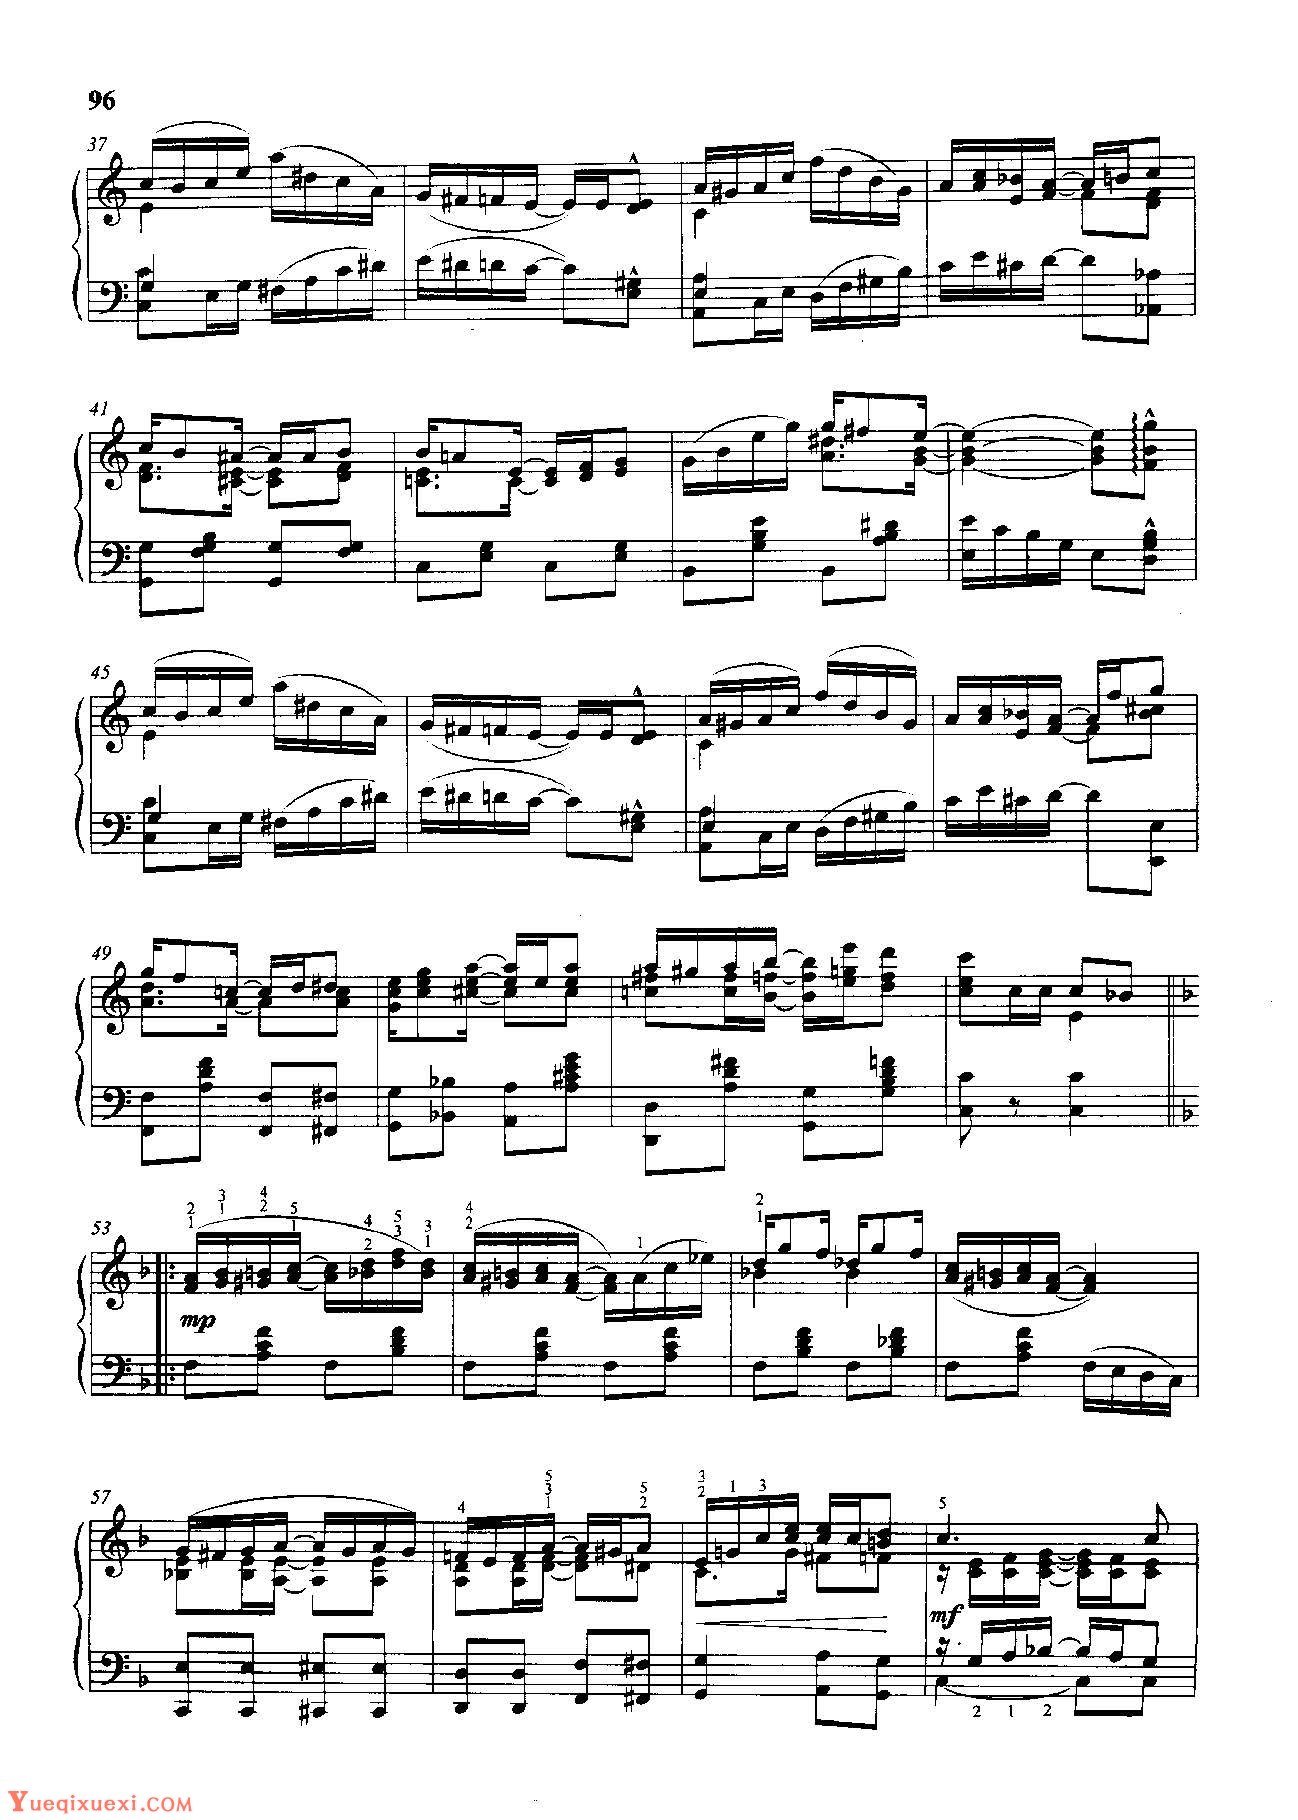 雷格泰姆钢琴乐谱《剑兰雷格》雷格泰姆之王斯科特·乔普林